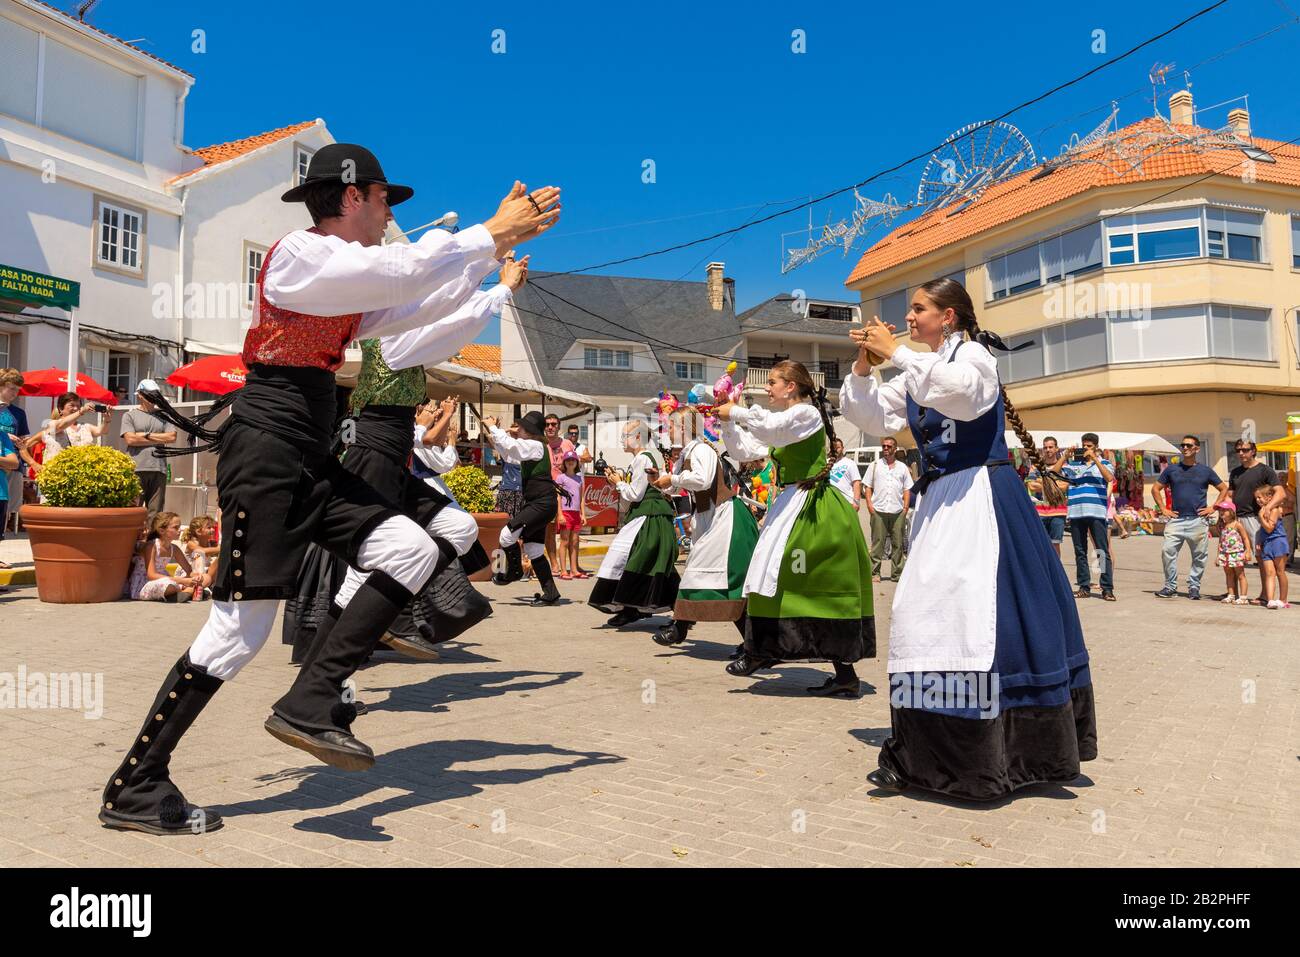 Les jeunes gens qui font de la danse folklorique traditionnelle pendant les fêtes annuelles, Corrubedo, Galice, Espagne Banque D'Images